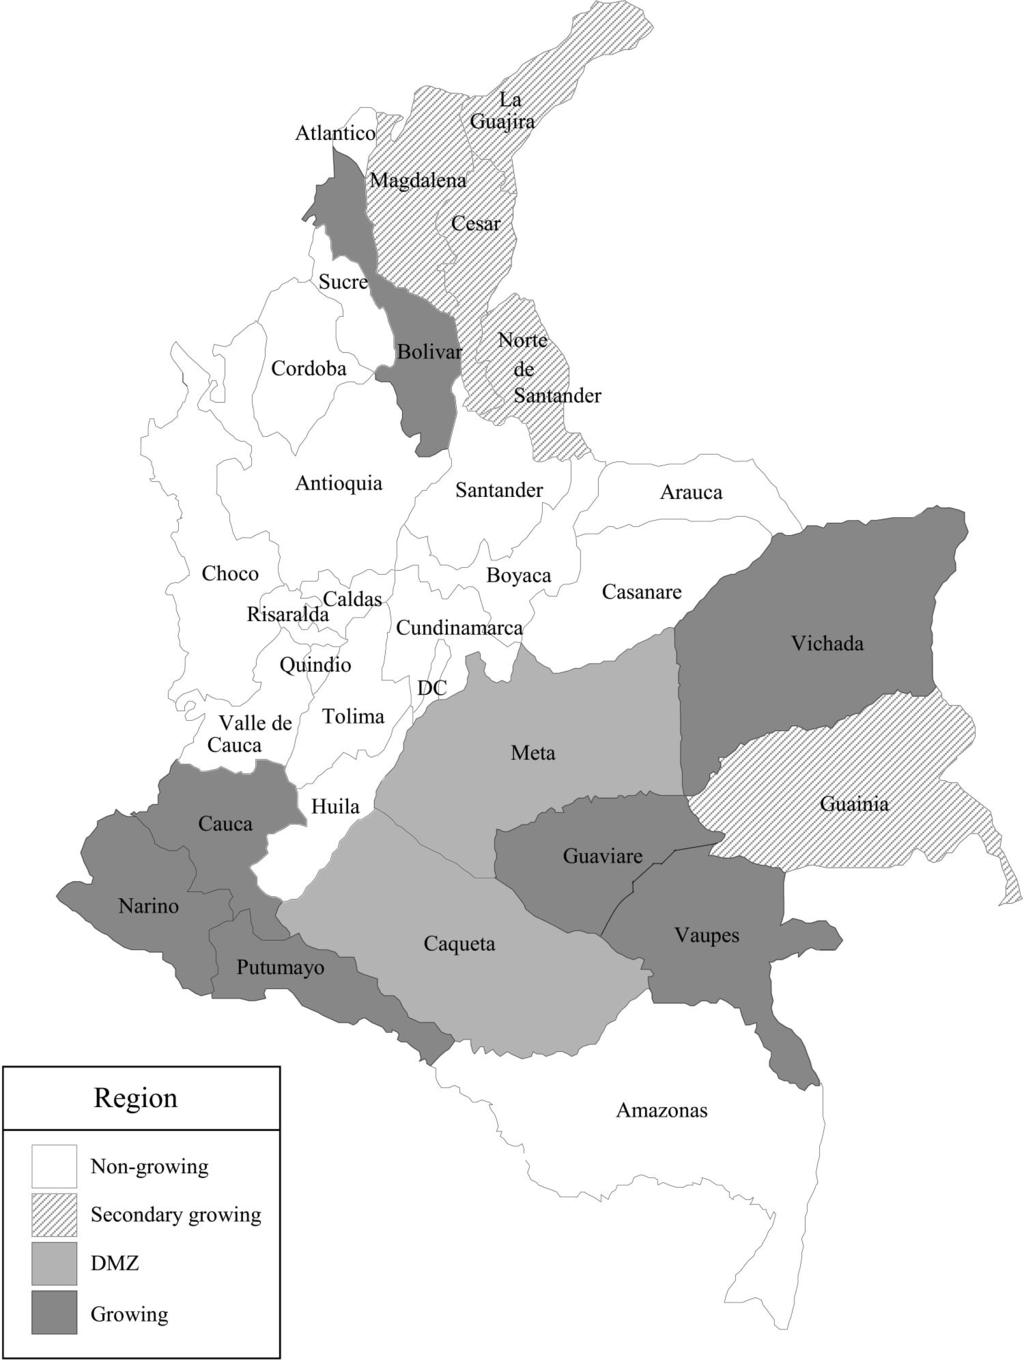 COCA, INCOME, AND CIVIL CONFLICT IN COLOMBIA 215 APPENDIX C